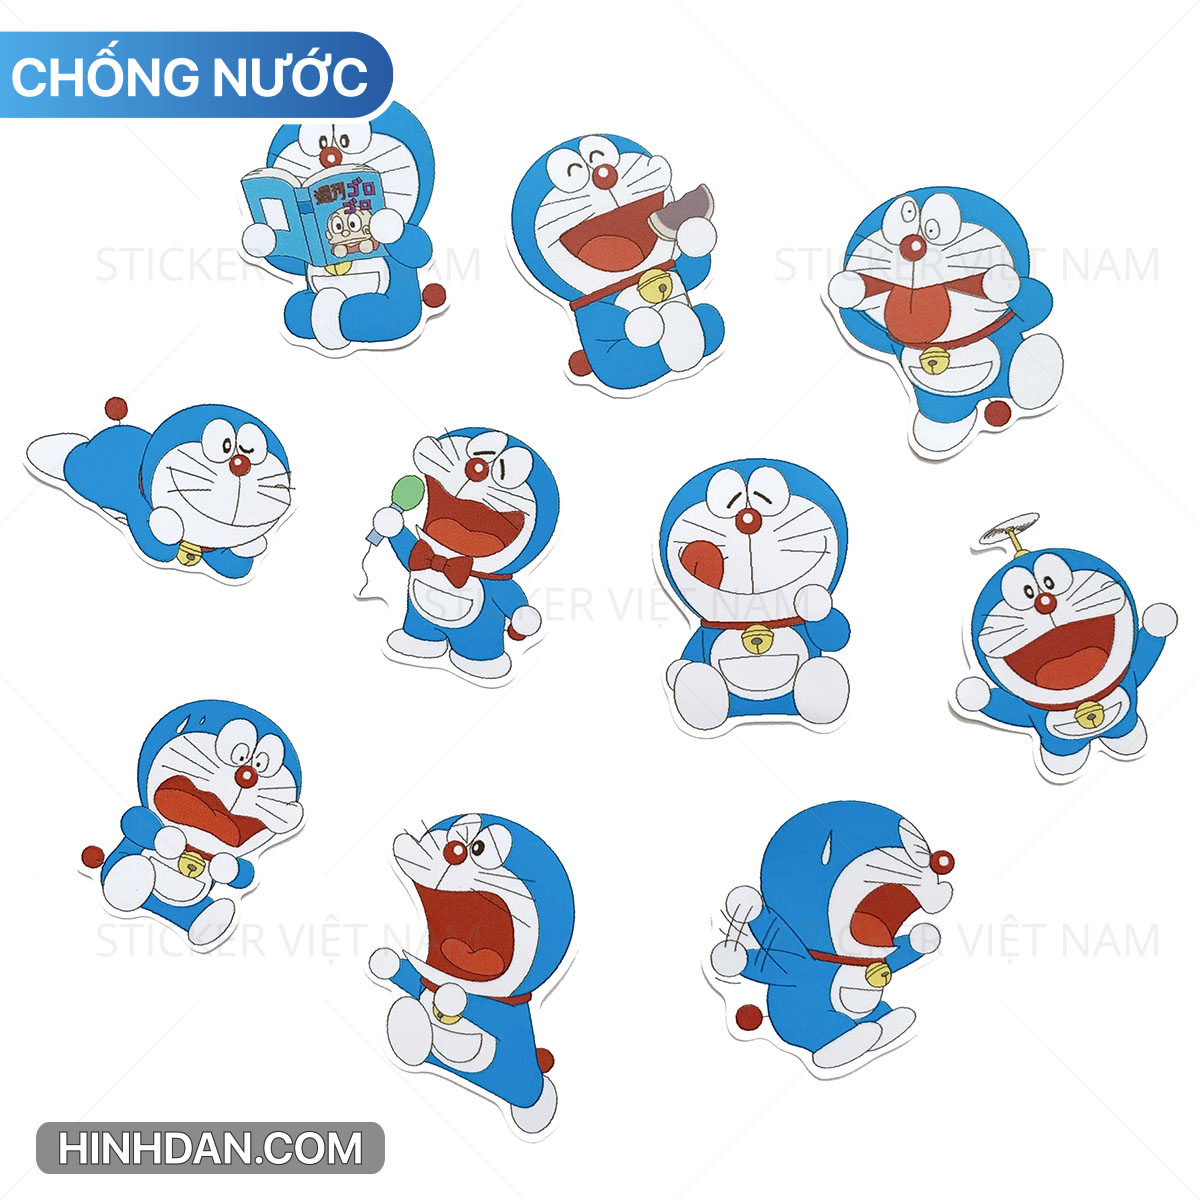 Bạn là một người yêu thích dòng tranh Doremon và muốn sở hữu những sticker xinh xắn để trang trí hay gửi tặng bạn bè? Sticker Doraemon Dễ Thương bộ mới nhất 2021 với nhiều kích thước và thiết kế đáng yêu sẽ là lựa chọn không thể bỏ qua! Hãy đến với chúng tôi và lựa chọn cho mình các sticker ưng ý nhé!